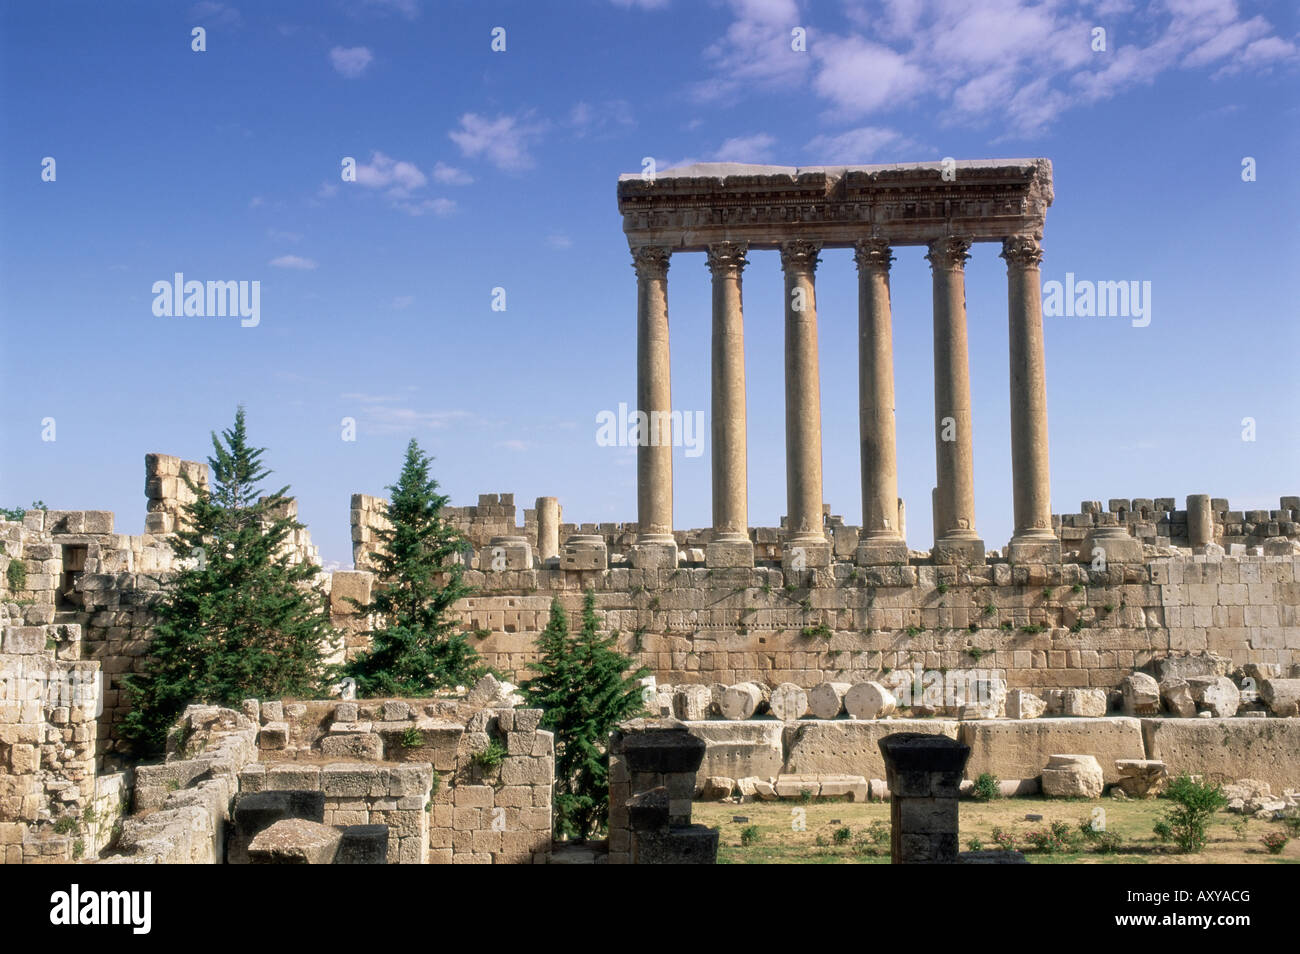 Temple romain de Jupiter, Baalbek, site archéologique, site du patrimoine mondial de l'UNESCO, vallée de la Bekaa, Liban, Moyen-Orient Banque D'Images